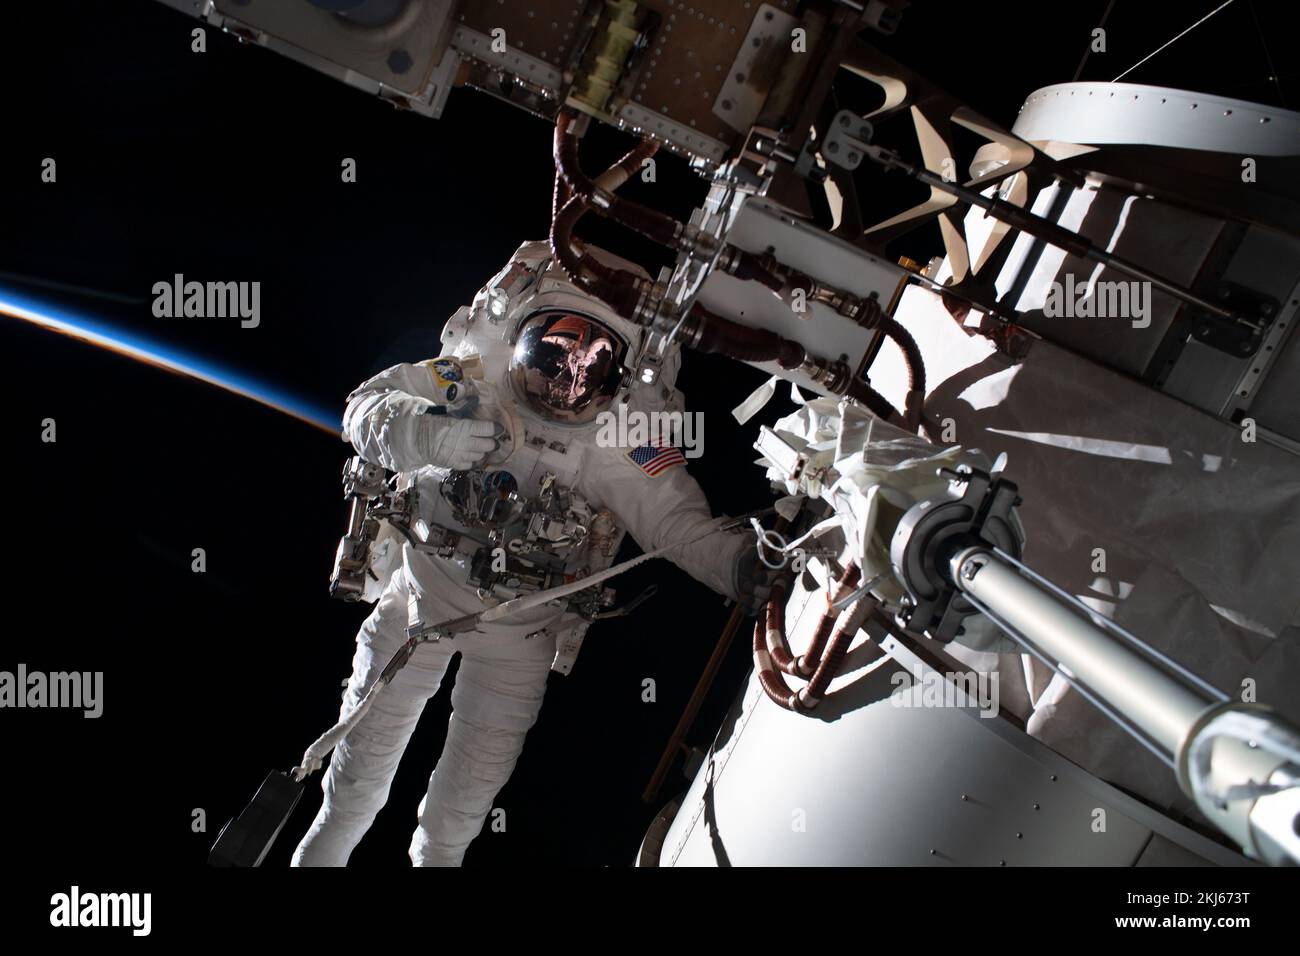 Estación Espacial Internacional, Orbita Terrestre. 15 de noviembre de 2022. El astronauta de la NASA y el ingeniero de vuelo de la Expedición 68 Frank Rubio durante una caminata espacial fuera de la Estación Espacial Internacional, el 15 de noviembre de 2022 en órbita terrestre. La caminata espacial de 7 horas y 11 minutos para montar un soporte de montaje fue la primera para Rubio y su compañero Josh Cascada. Crédito: Josh Cascada/NASA/Alamy Live News Foto de stock